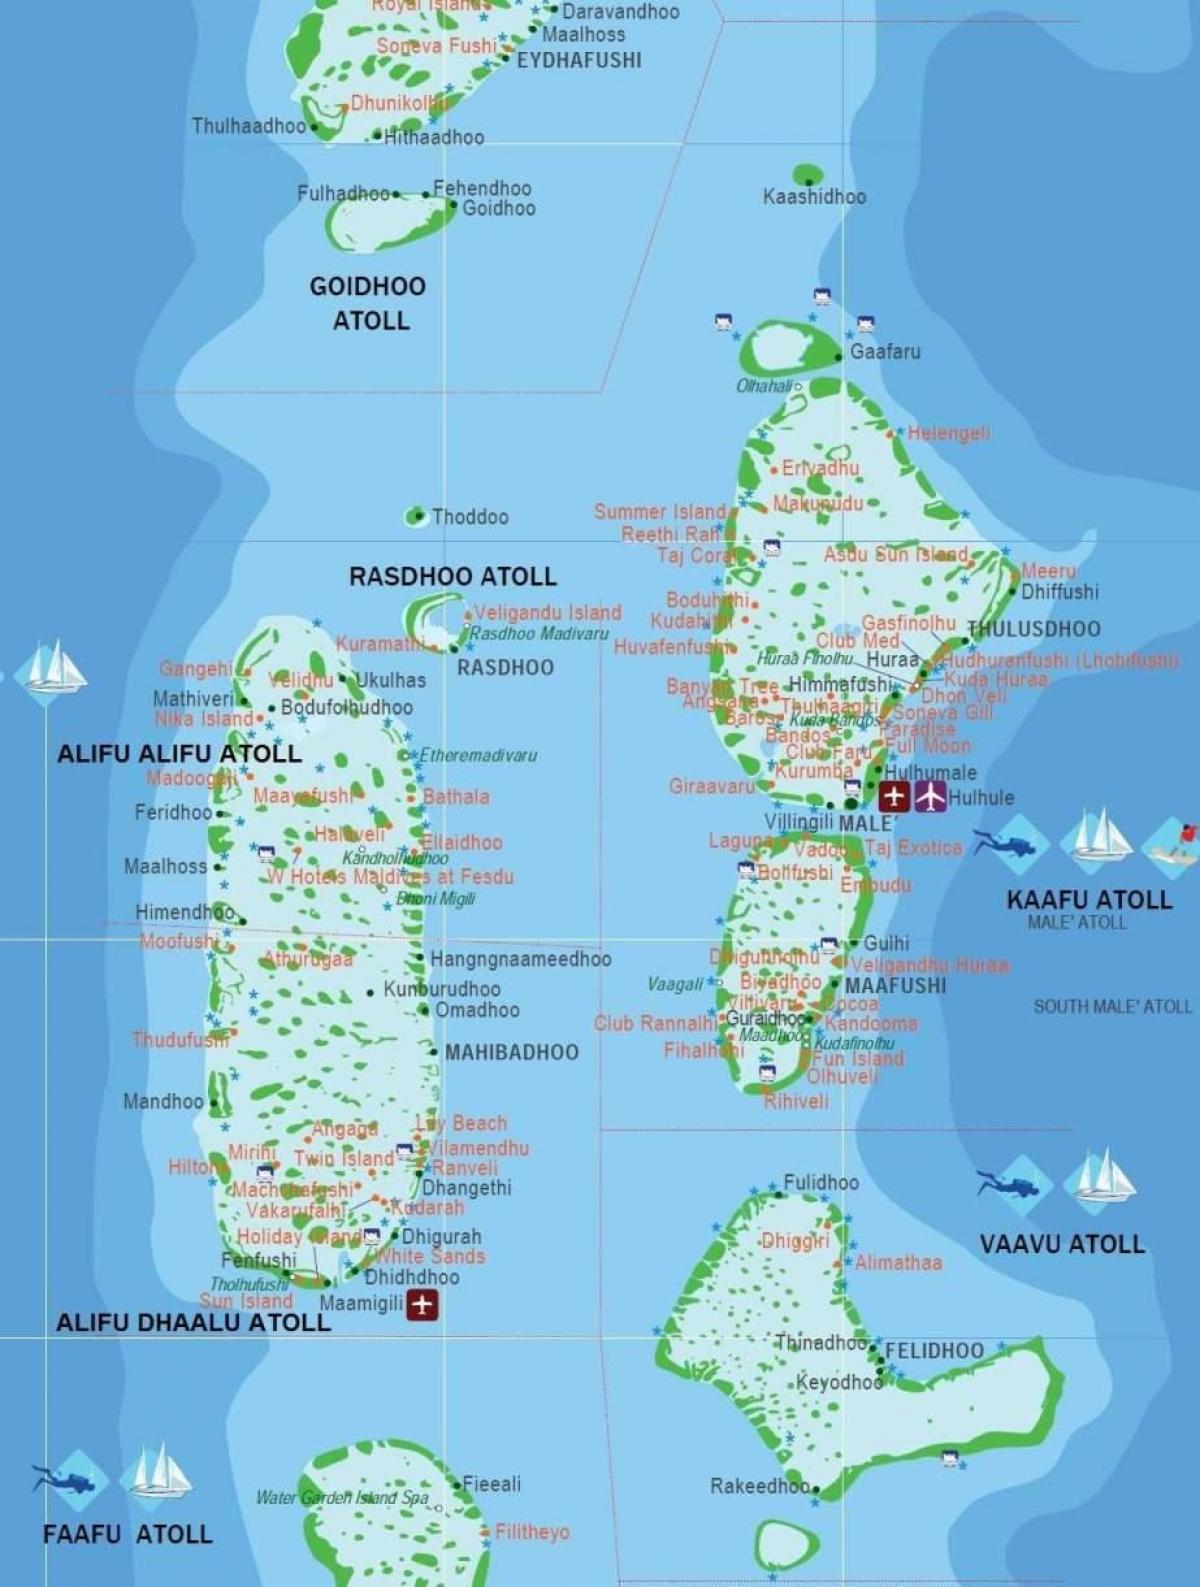 جزر المالديف دولة في خريطة العالم